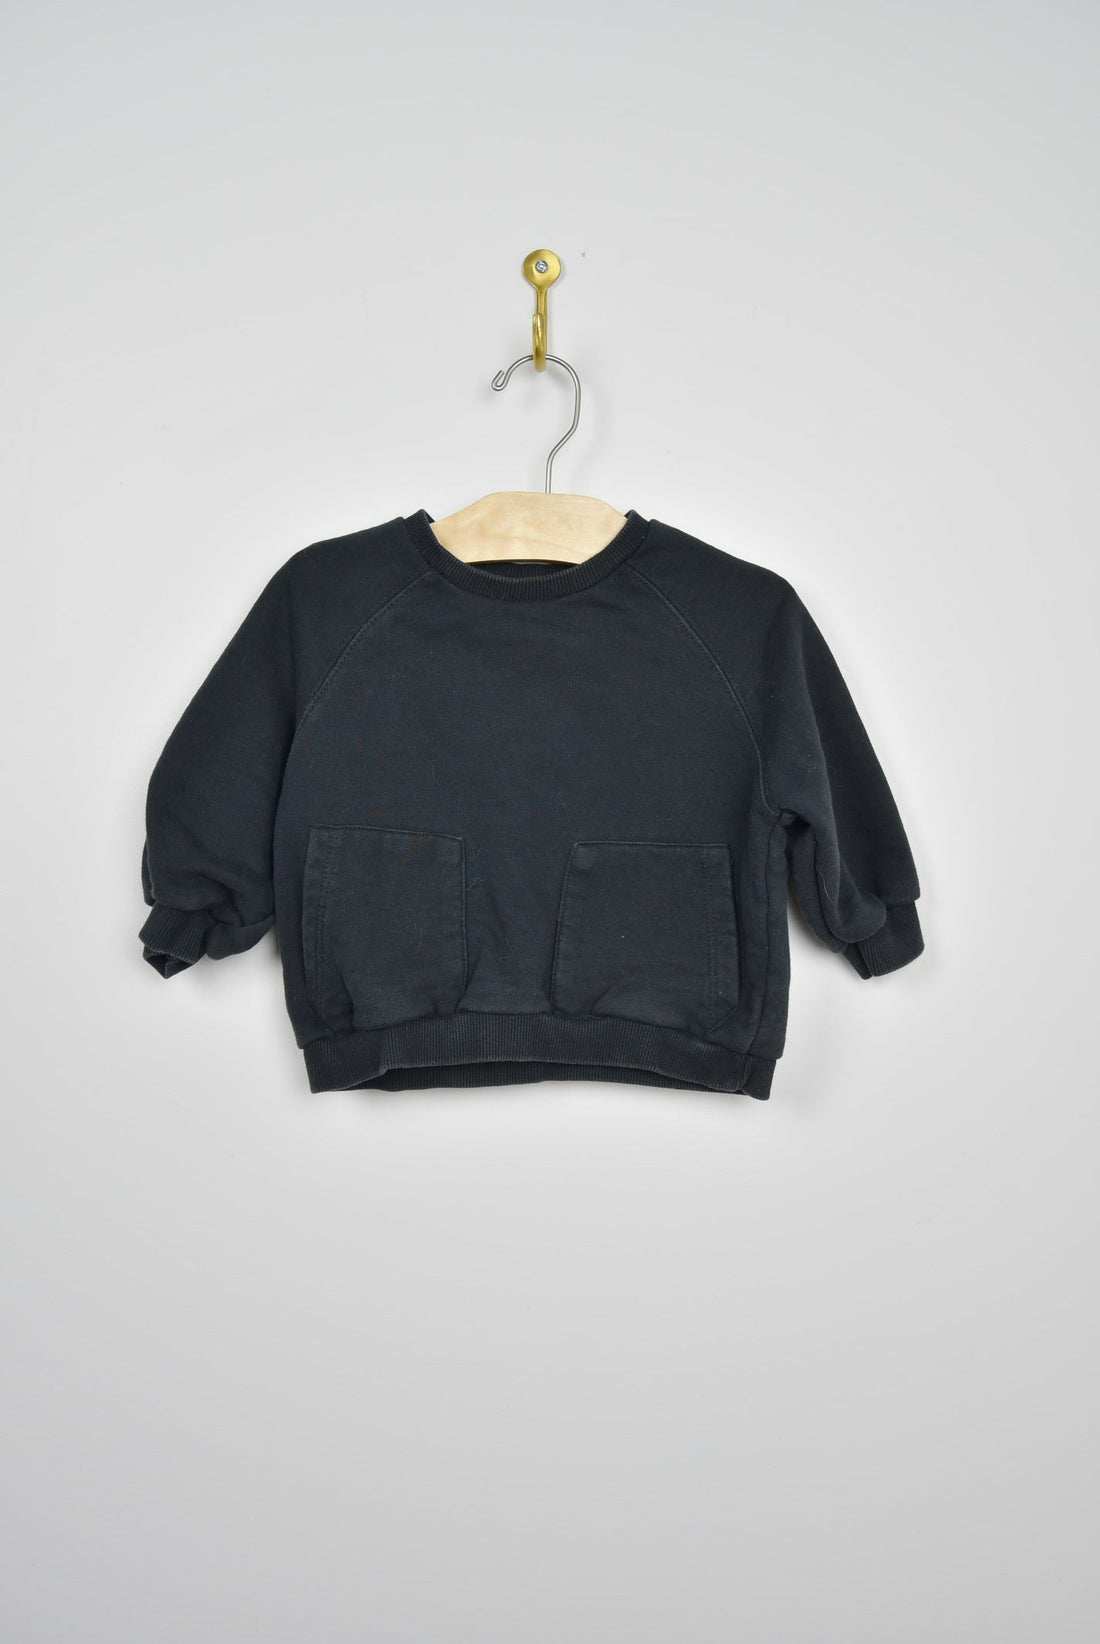 Zara Zara Black Sweater - 12-18M